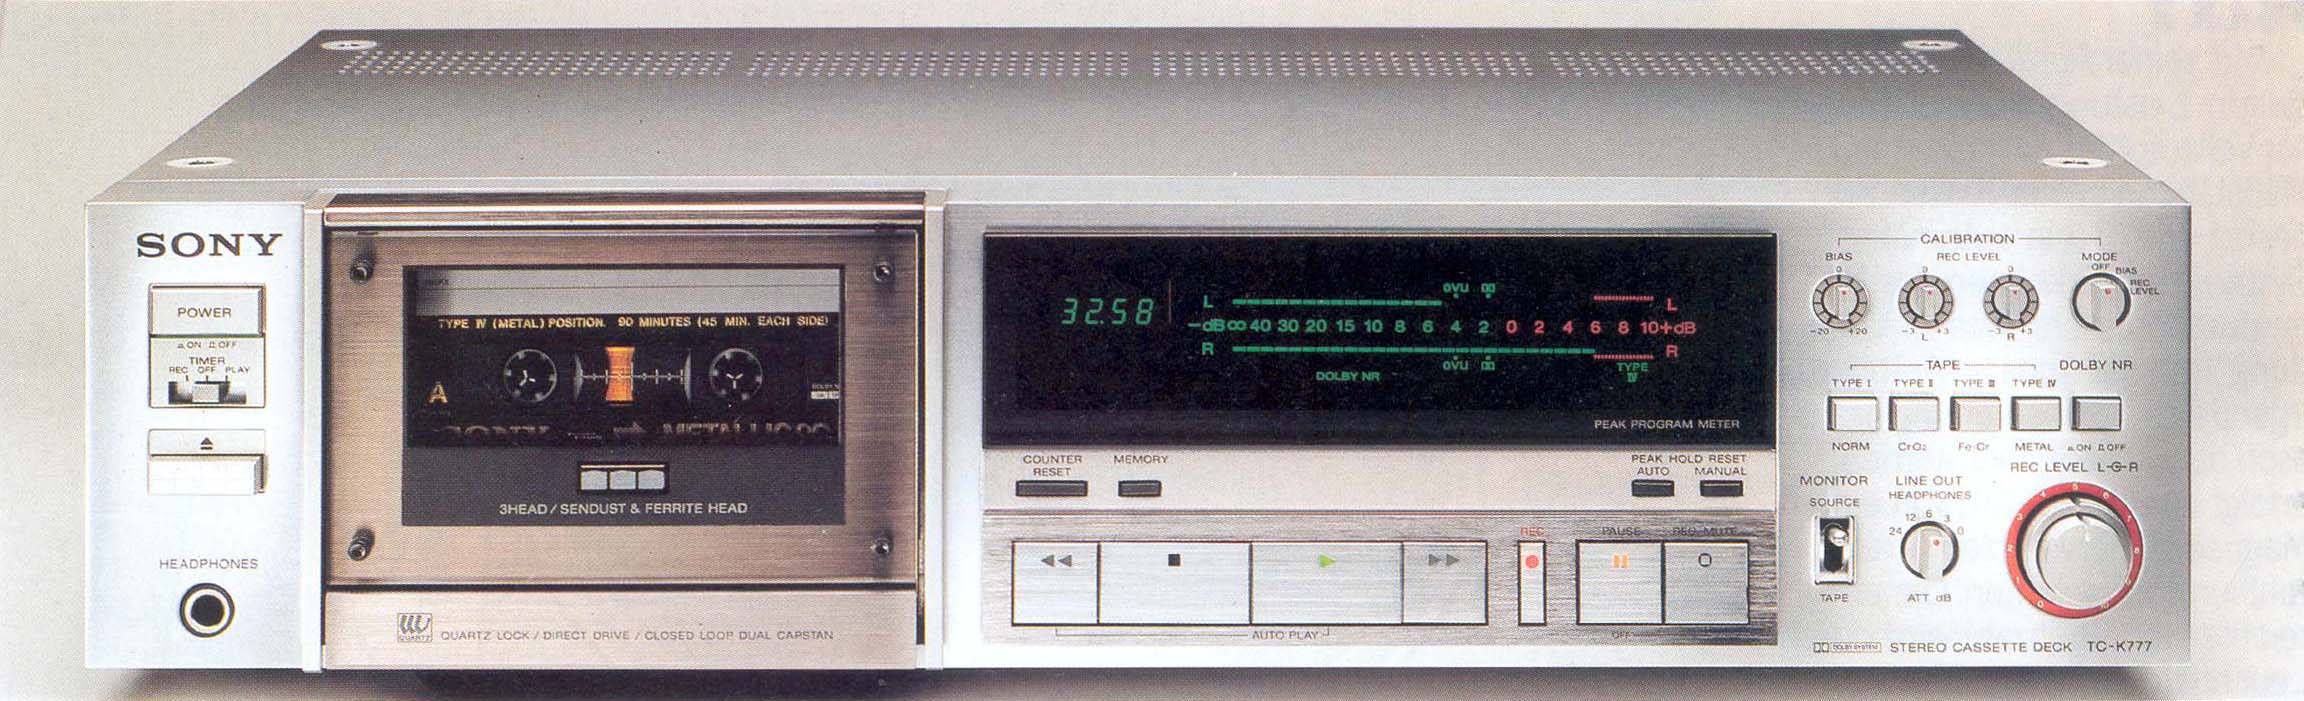 Sony TC-K777ES (mkI)